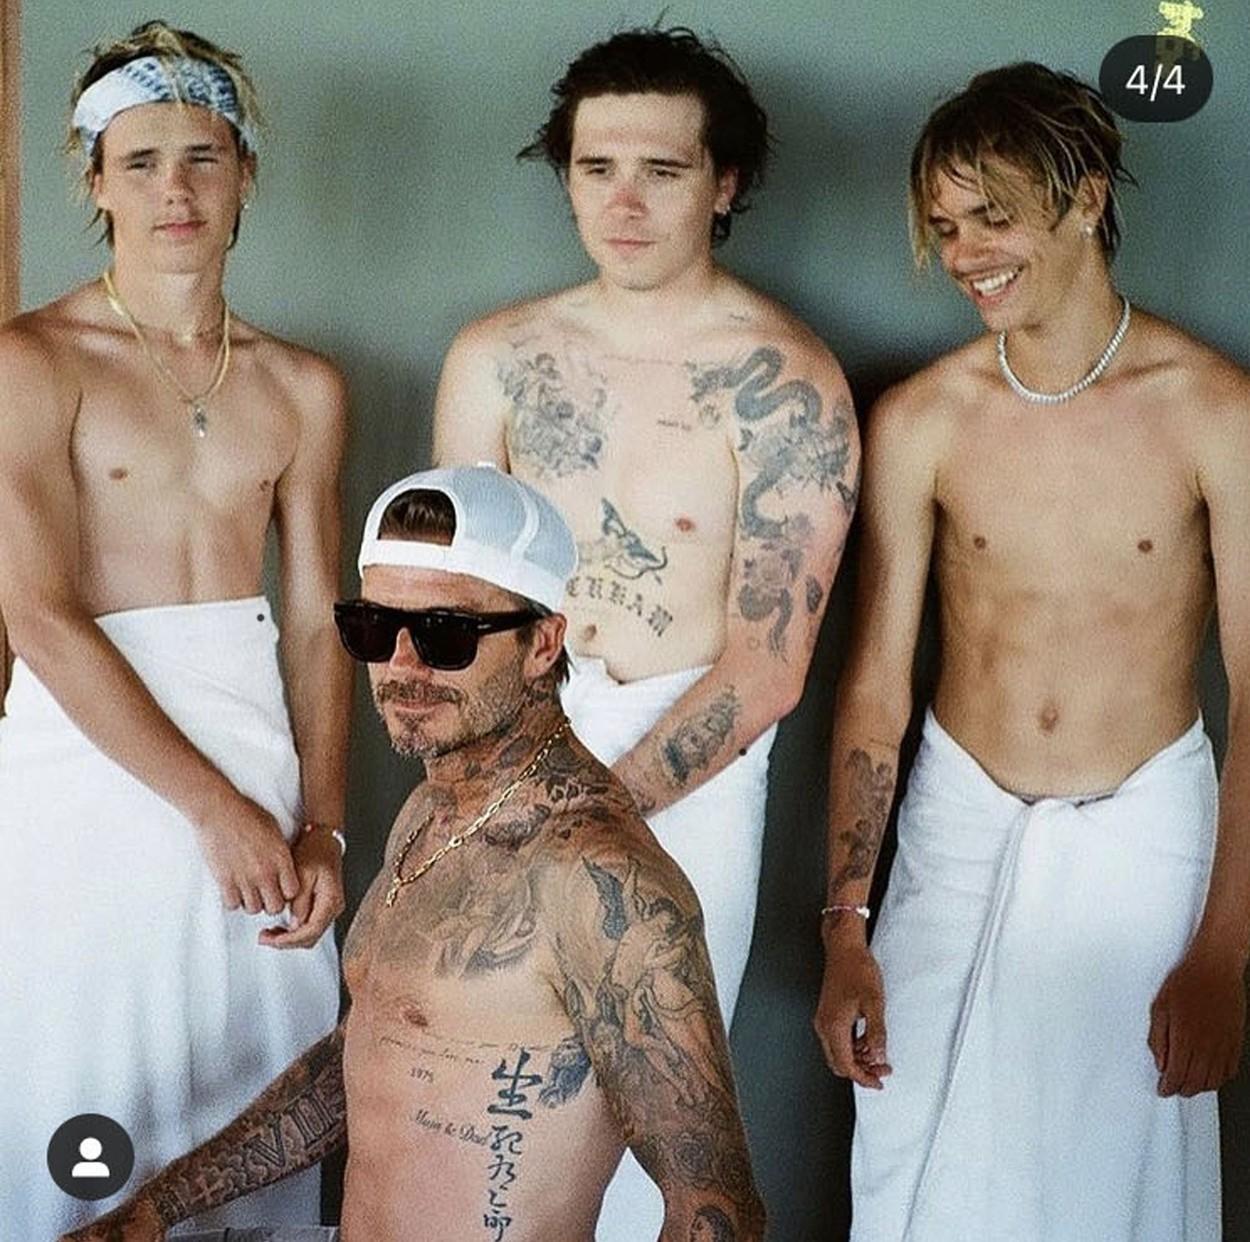 David Beckham împreună cu cei trei băieți - Brooklyn, Cruz și Romeo. Sunt cu toții la bustul gol